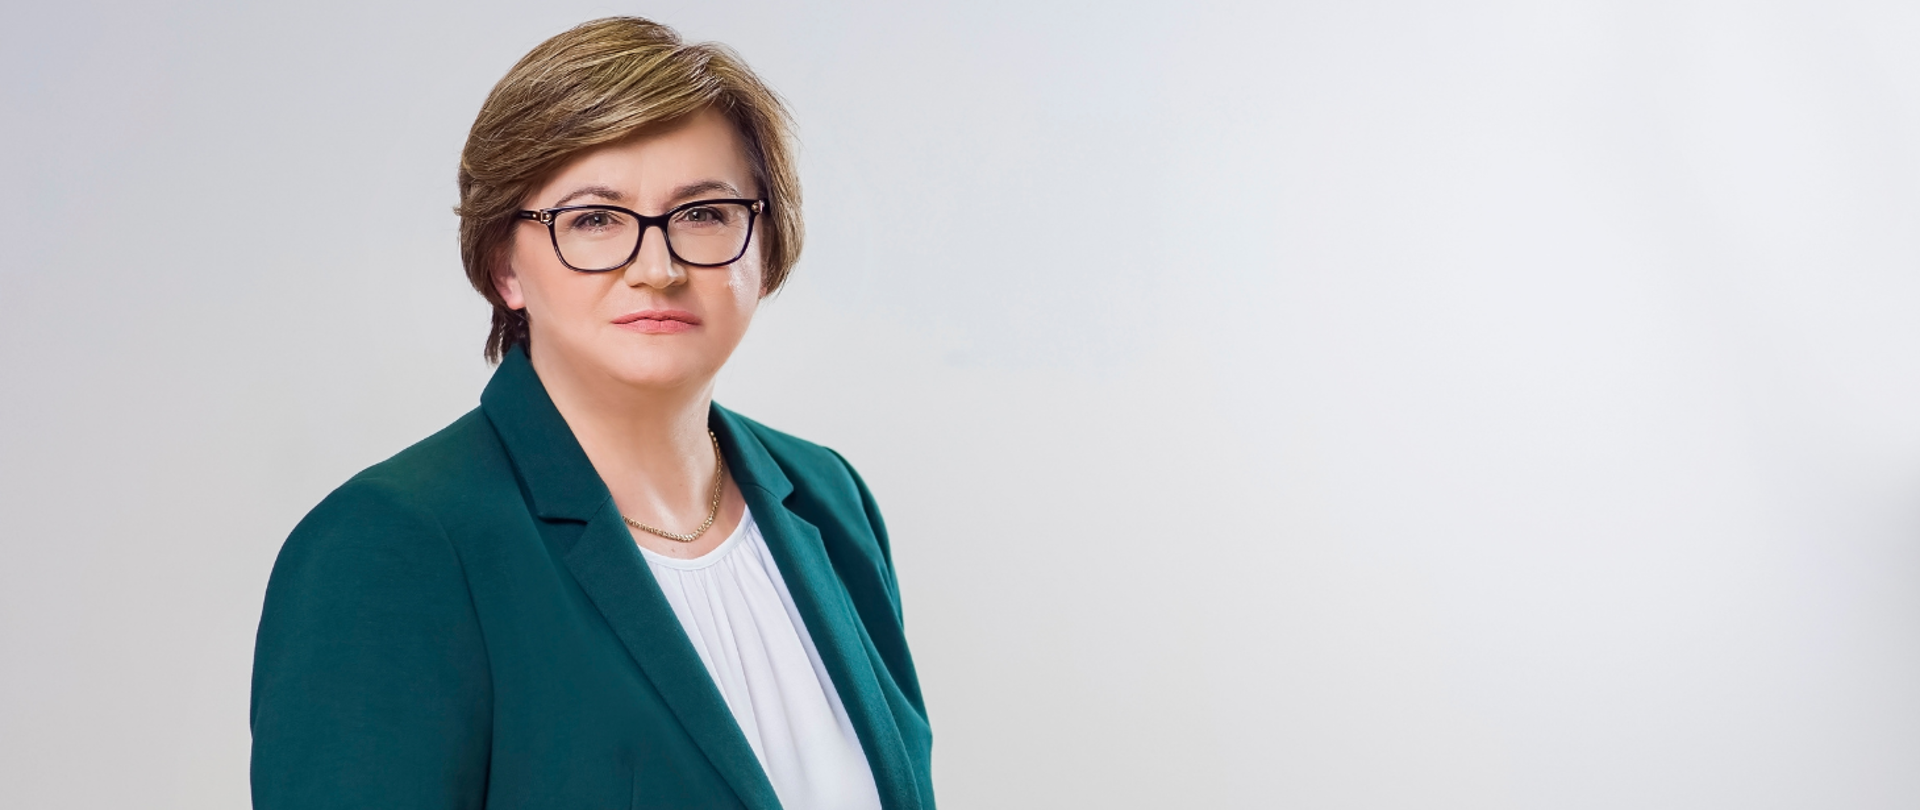 Małgorzata Zielonka skarbnik Powiatu Pruszkowskiego w zielonej garsonce i czarnych okularach